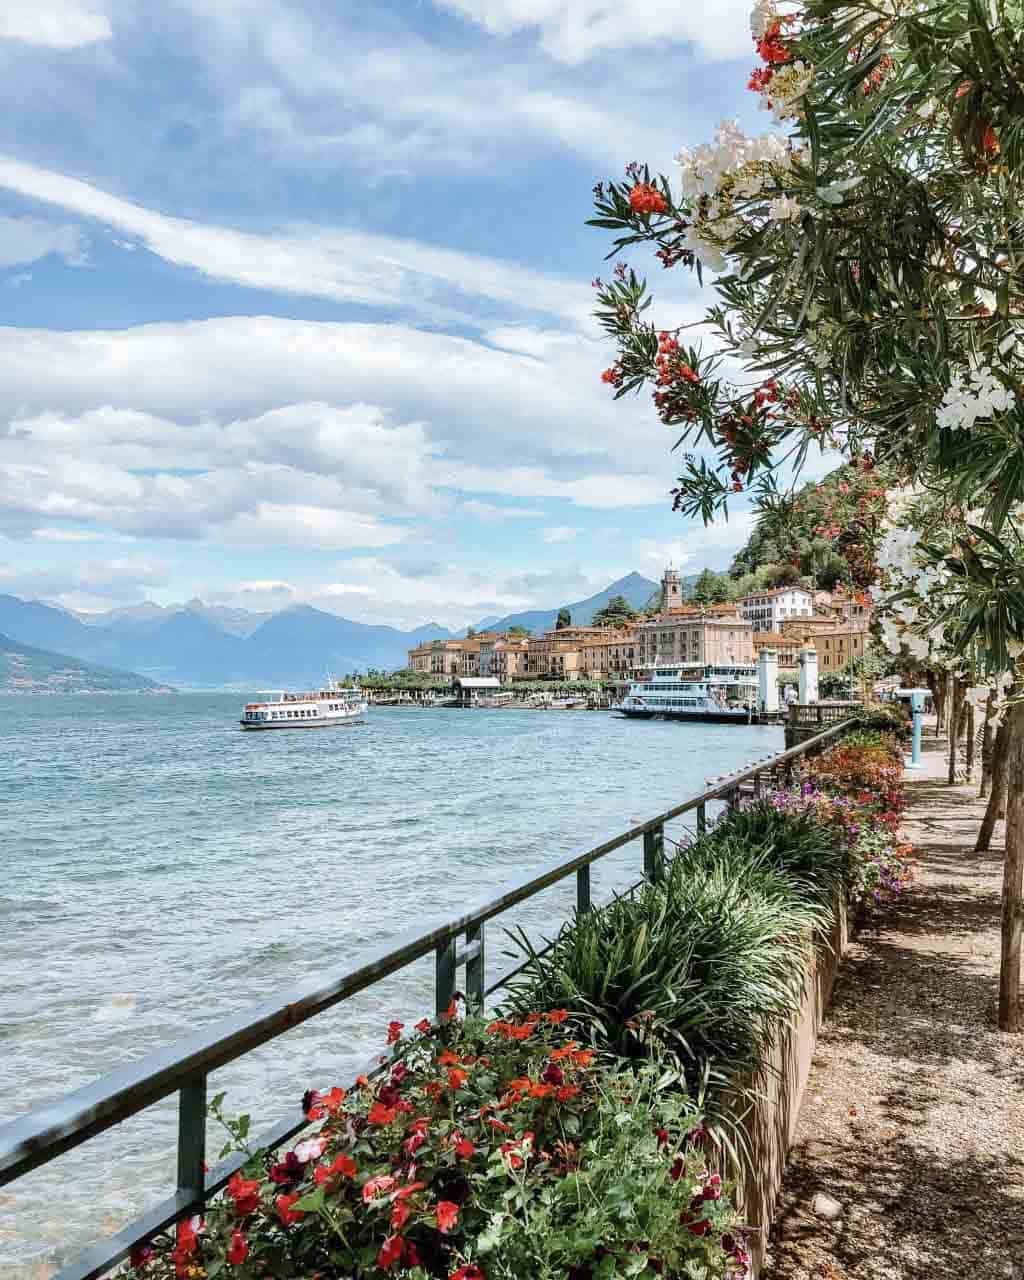 Lakeside Promenade in Bellagio